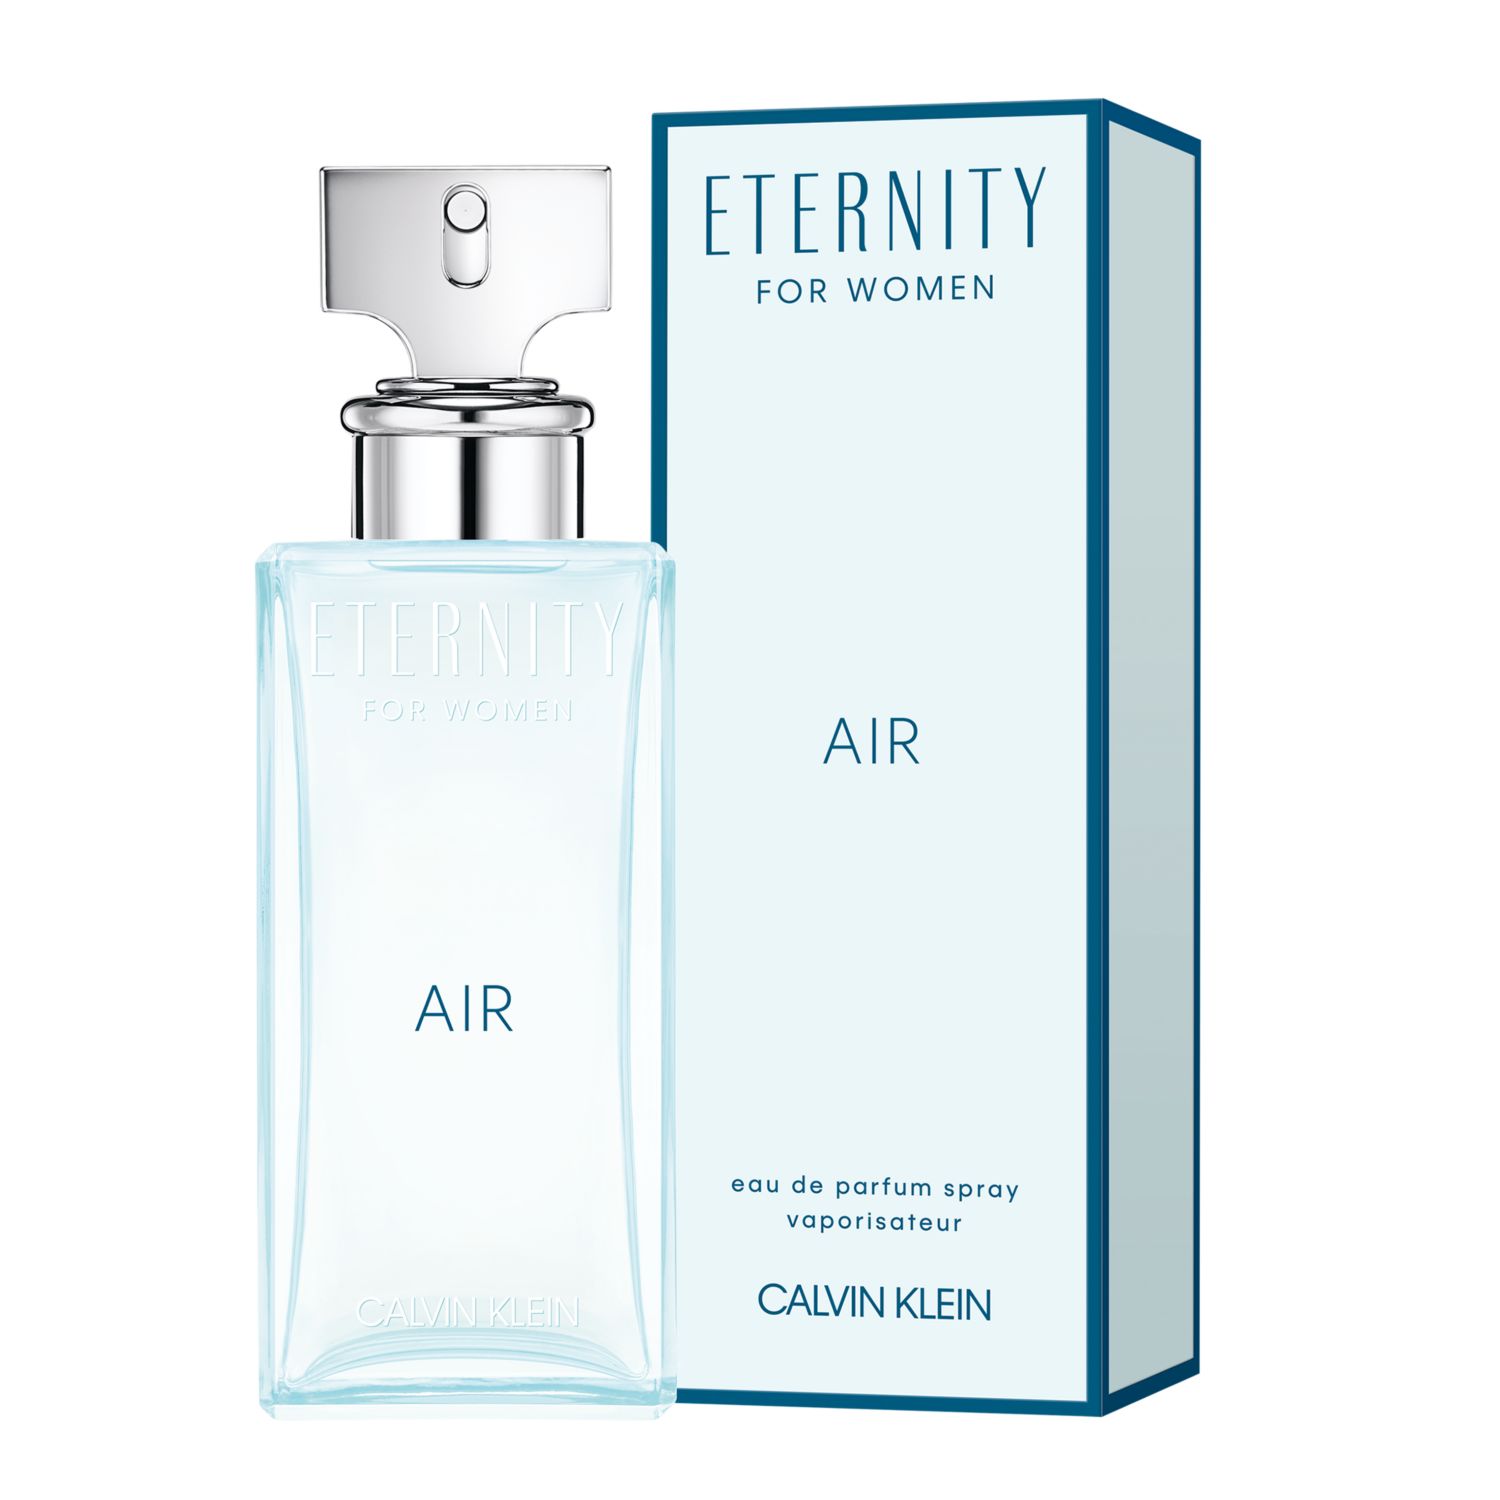 calvin klein eternity fragrance